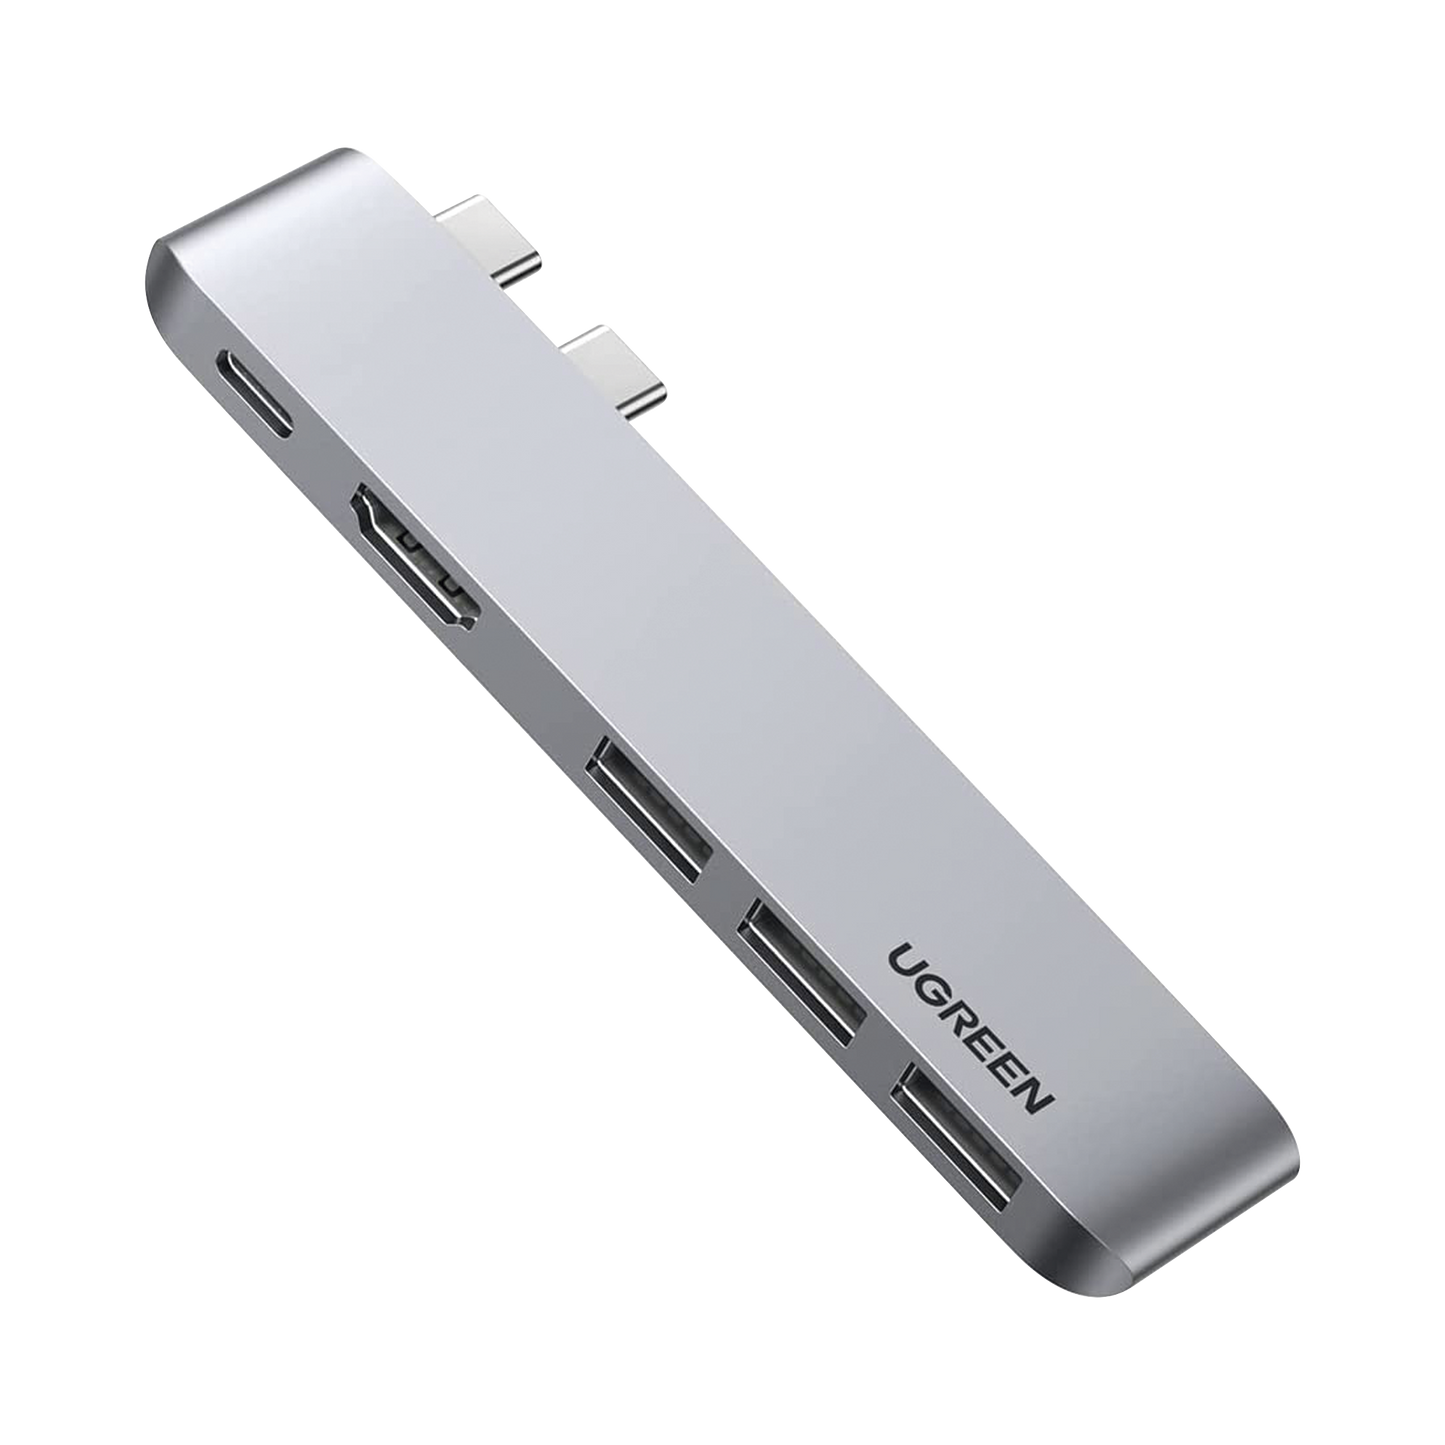 HUB USB-C (Thunderbolt 3) 5 en 2 | 1 Puerto HDMI 4K | 3 Puertos USB3.0 | USB- C (PD 100W) | Transferencia de Video y Datos | Multifuncional para MacBook Pro/Air | Carcasa de Aluminio.